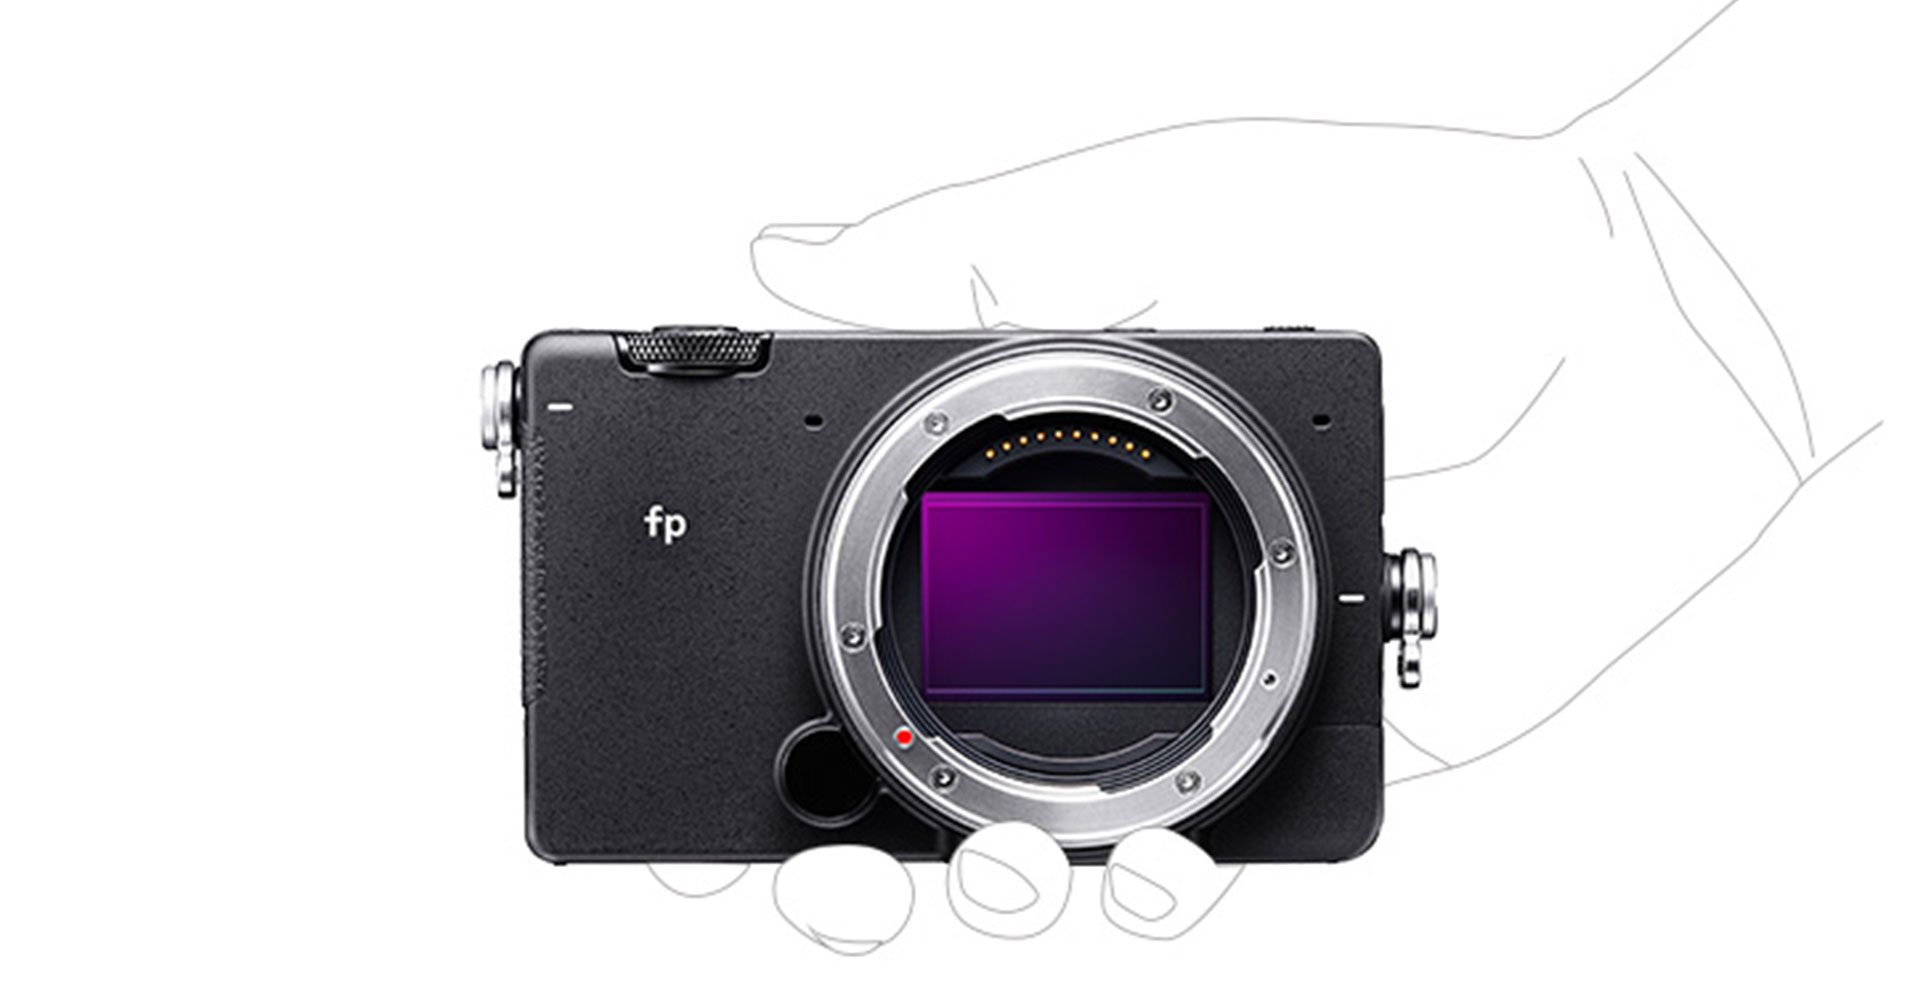 เอาแล้ว! Sigma จดทะเบียนกล้องรุ่นใหม่ ‘fp L’